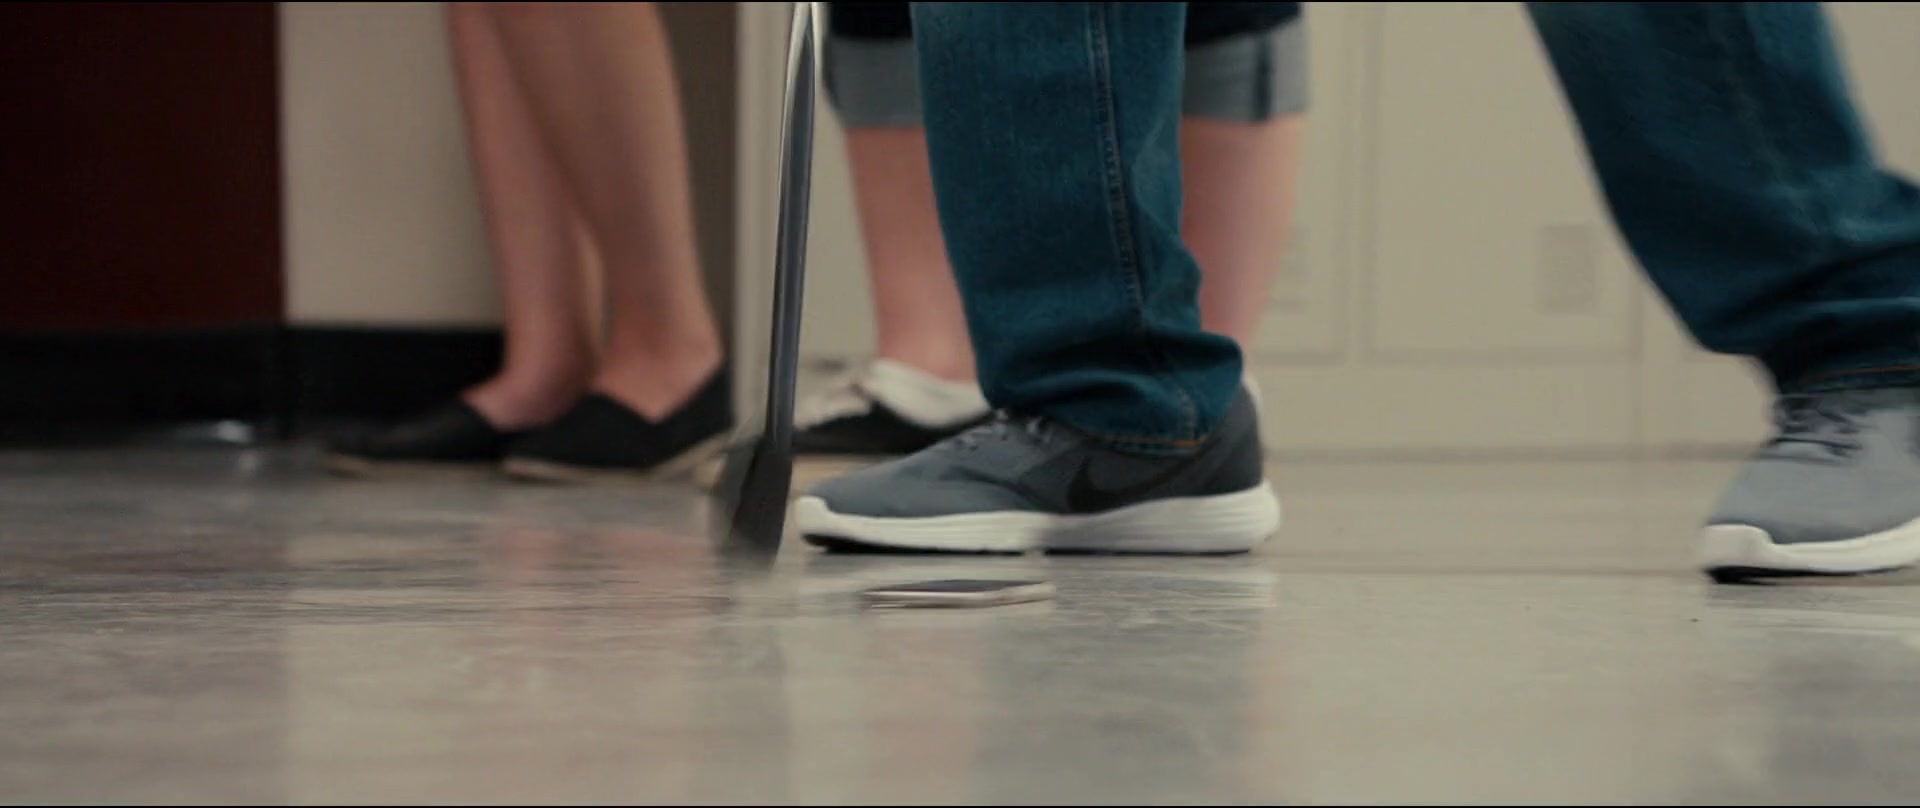 Nike Men's Grey Sneakers in Status Update (2018) Movie